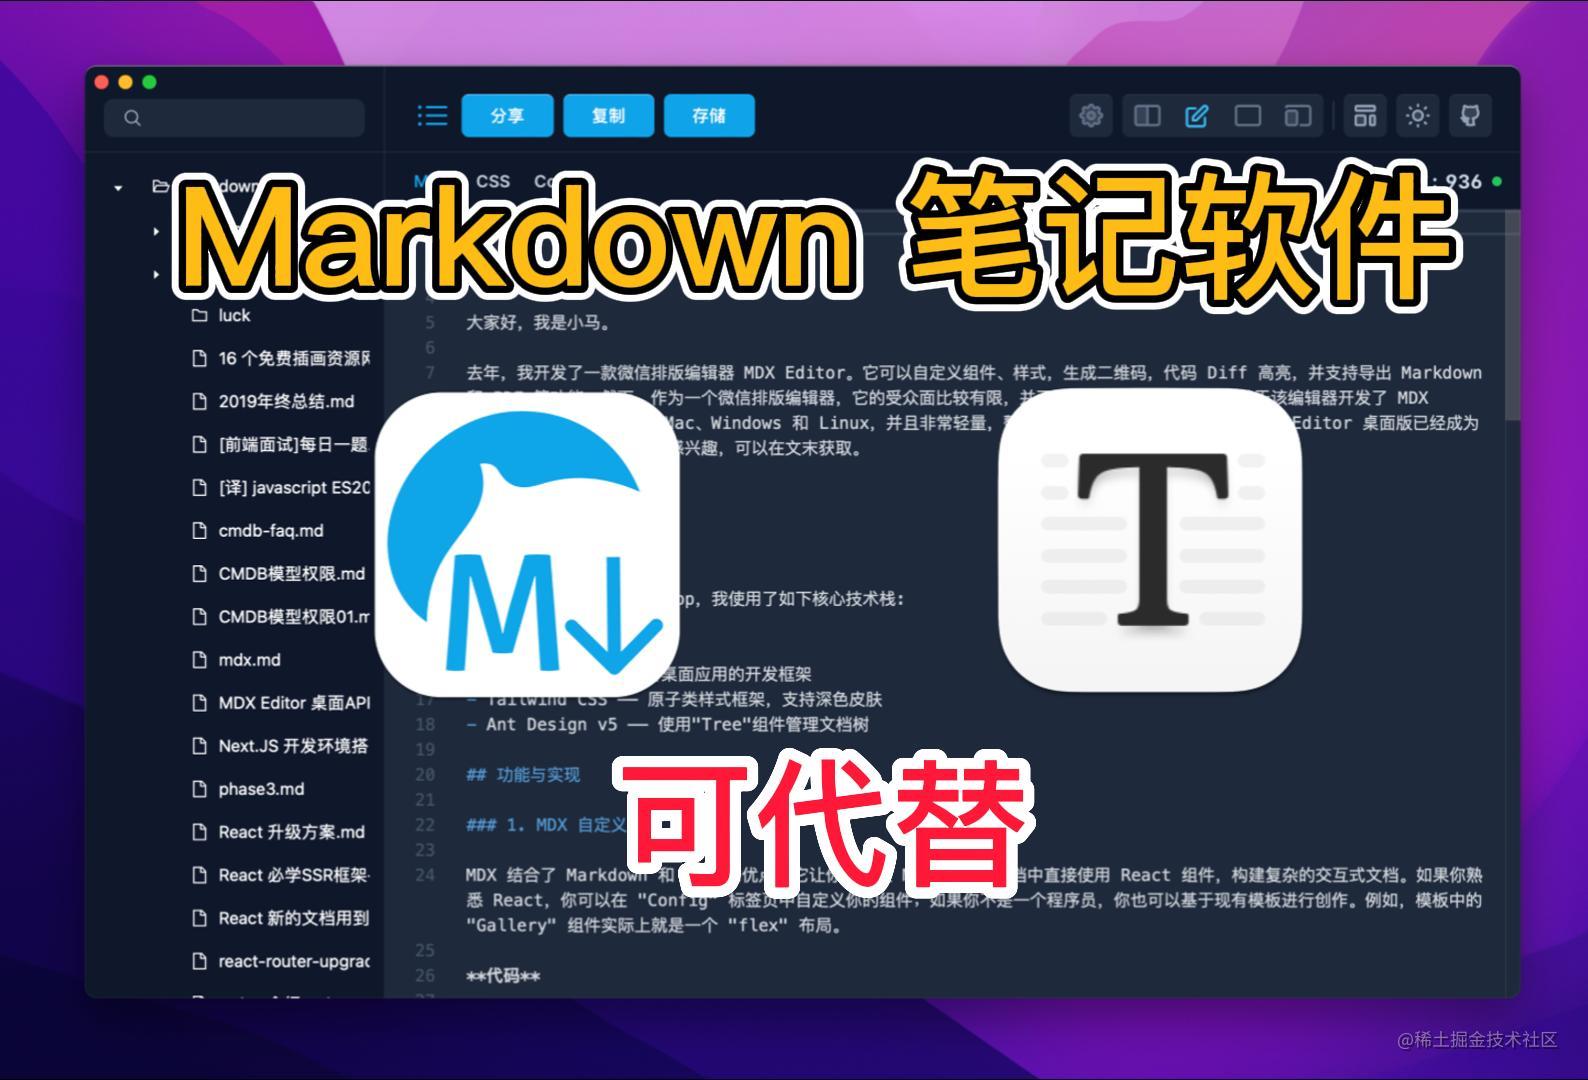 基于 Tauri， 我写了一个 Markdown 桌面 App